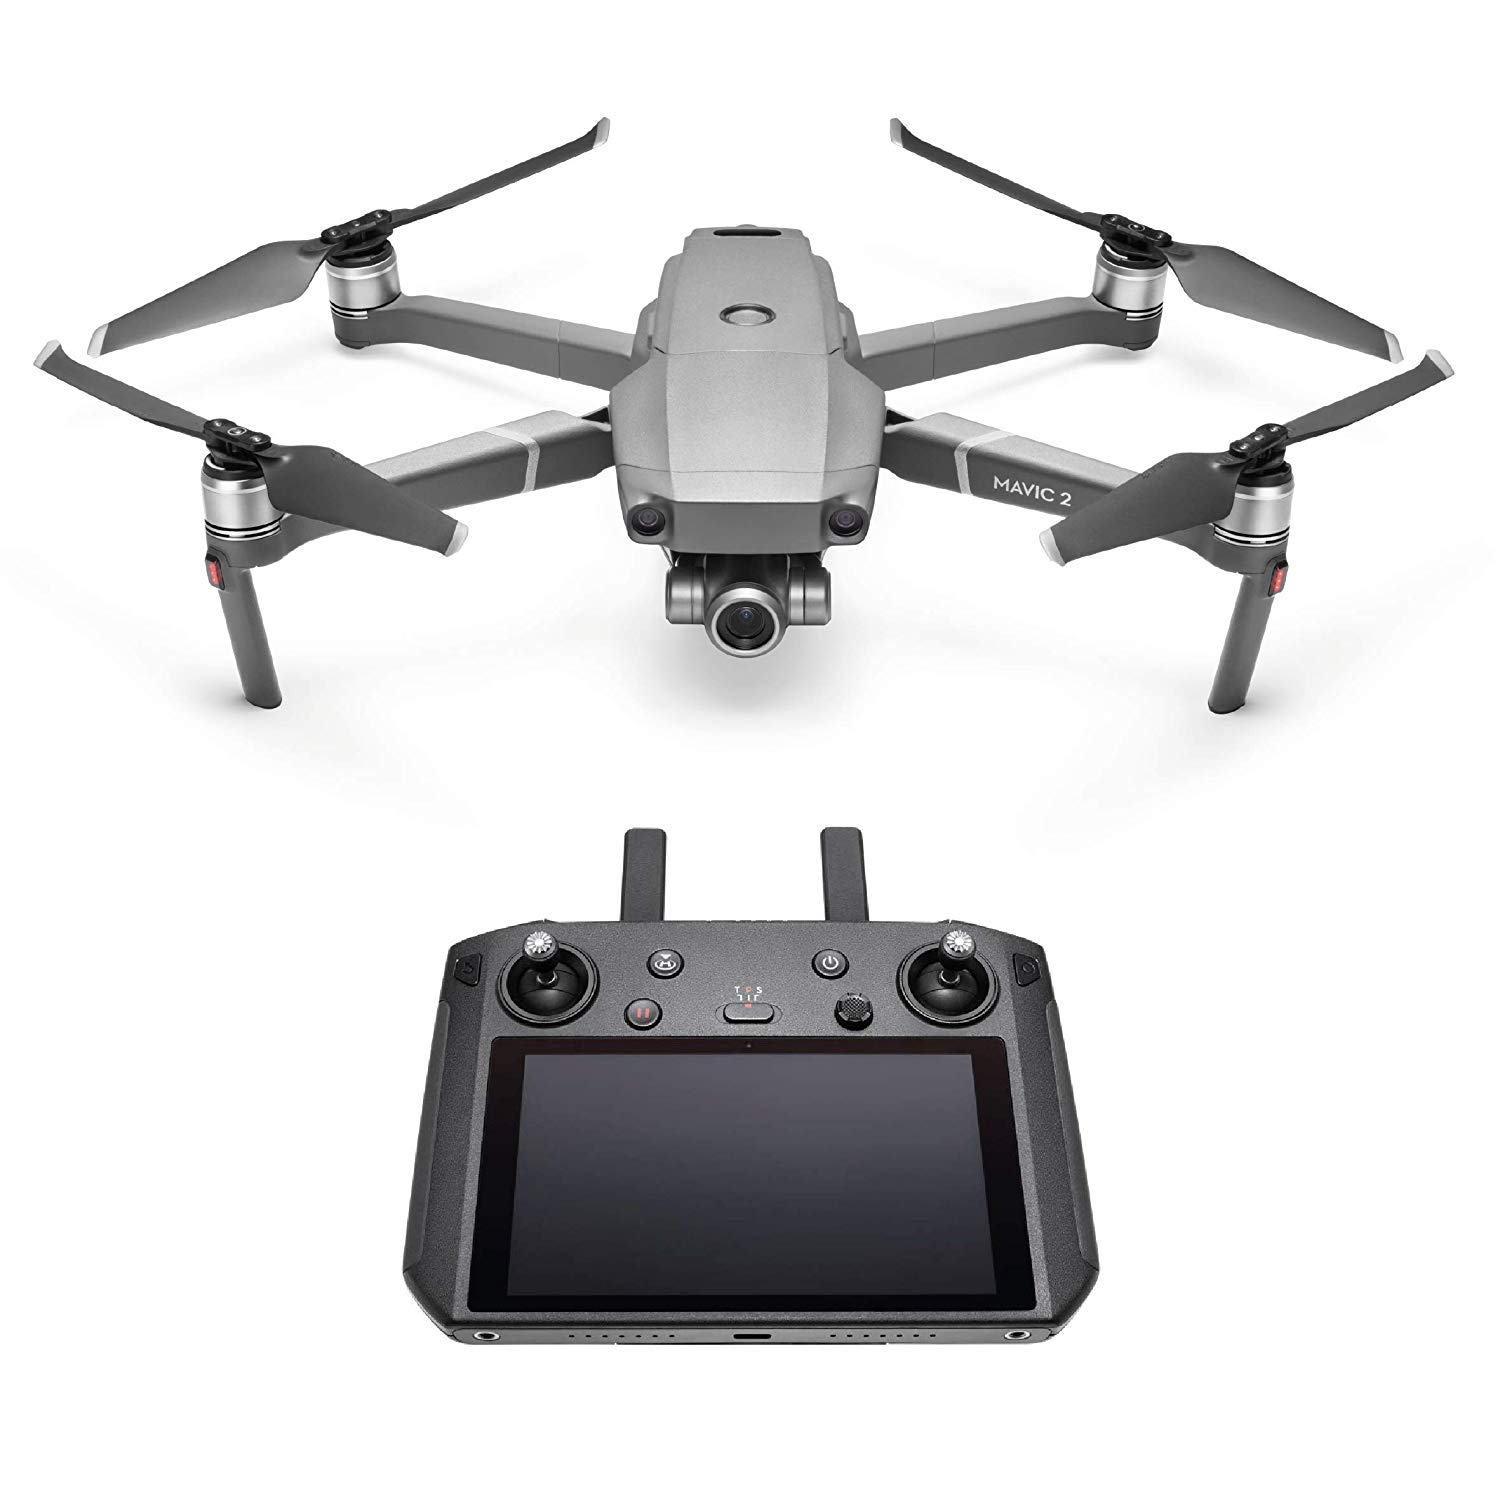 Drone Dji Mavic 2 zoom 4k autonomía hasta 30 min negro smart controller óptico 2448 mm sensor cmos de 12.3” y 12 mp fotos superresolución 48 5.5 1080p